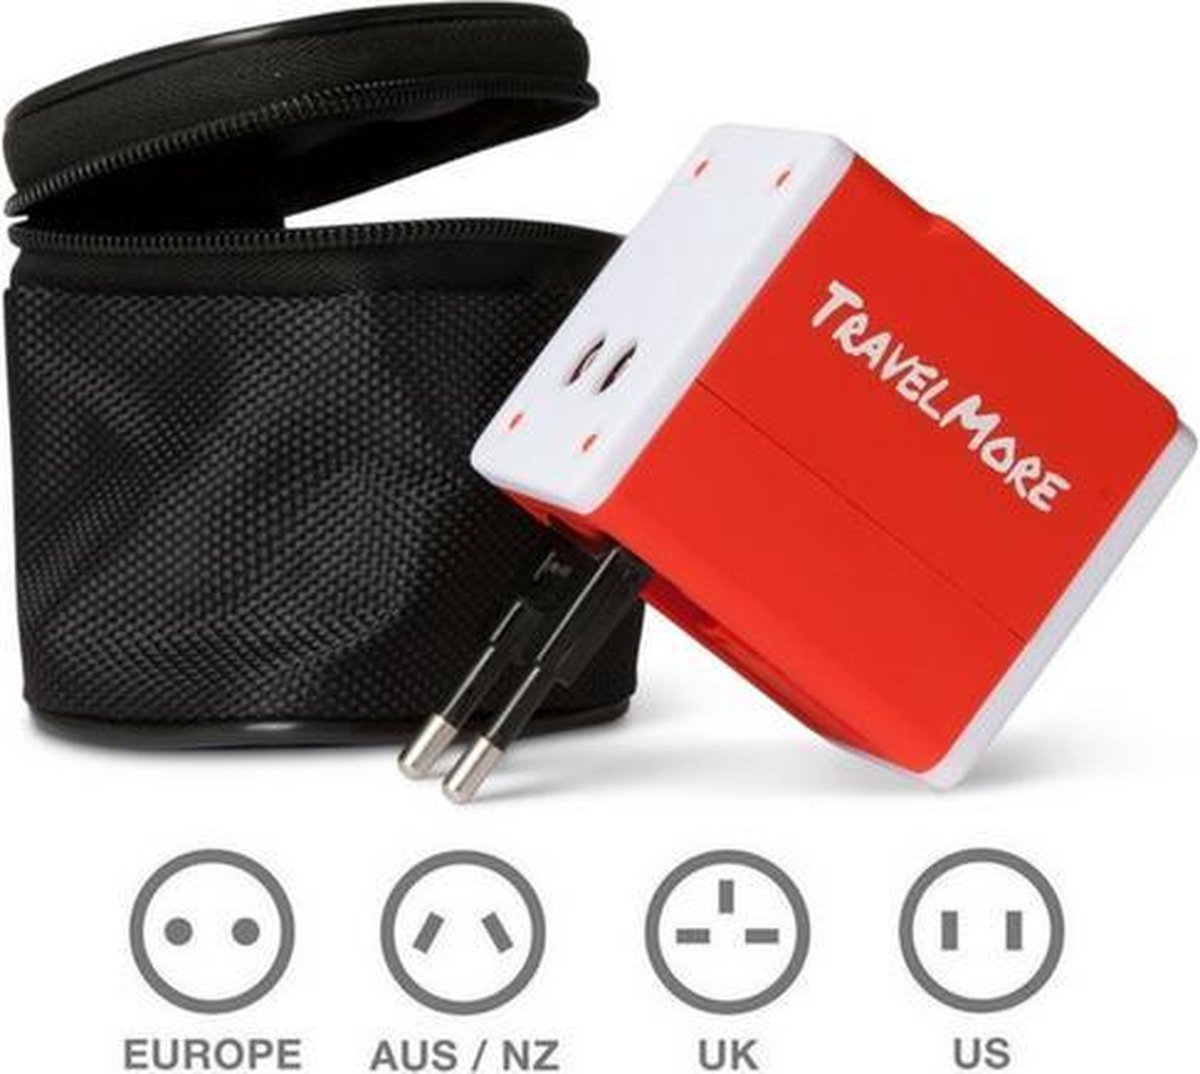 TravelMore  Universele Wereldstekker met 2 USB Poorten – Rood - Internationale Reisadapter Voor meer dan 150 landen - Engeland - Amerika - Australië - Azië - Zuid Amerika - Reis Adapter Stekker – Reisstekker – Wereldadapter – Travel Verloopstekker - TRVLMORE